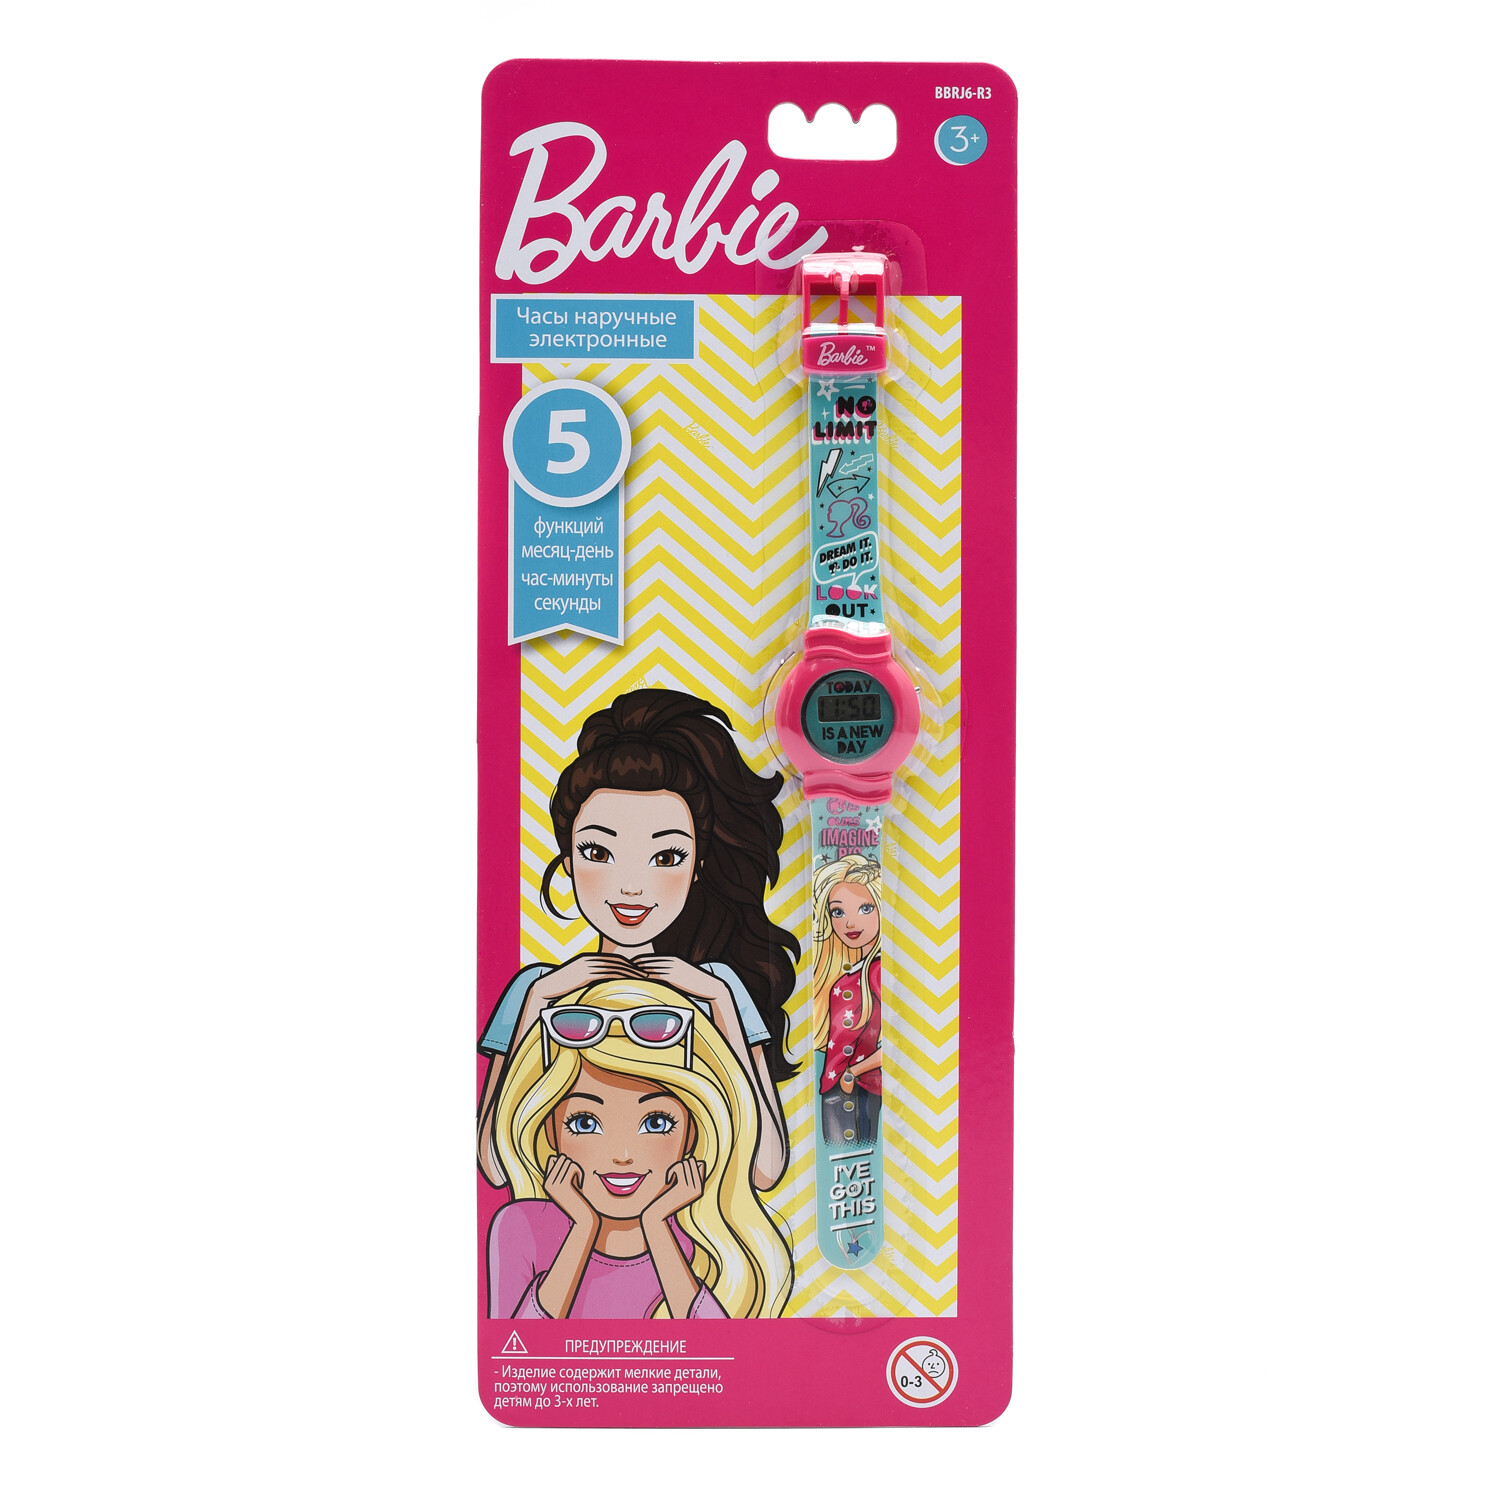 Часы наручные Barbie электронные, розовый, бирюзовый BBRJ6-R3 часы наручные barbie электронные бирюзовый розовый bbrj6 r4